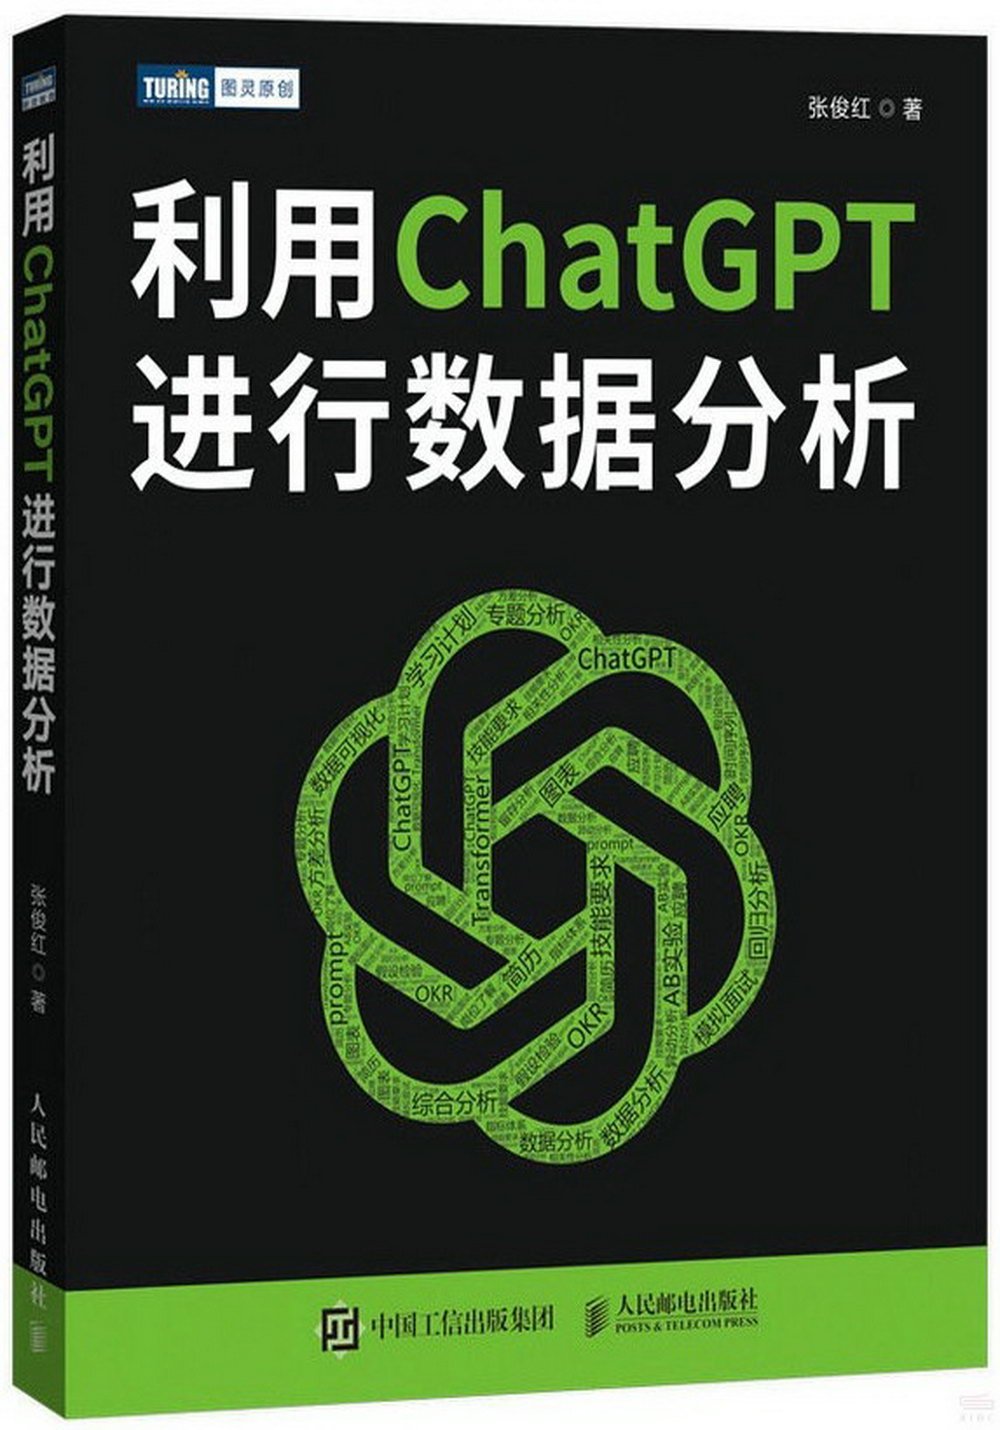 利用ChatGPT進行數據分析